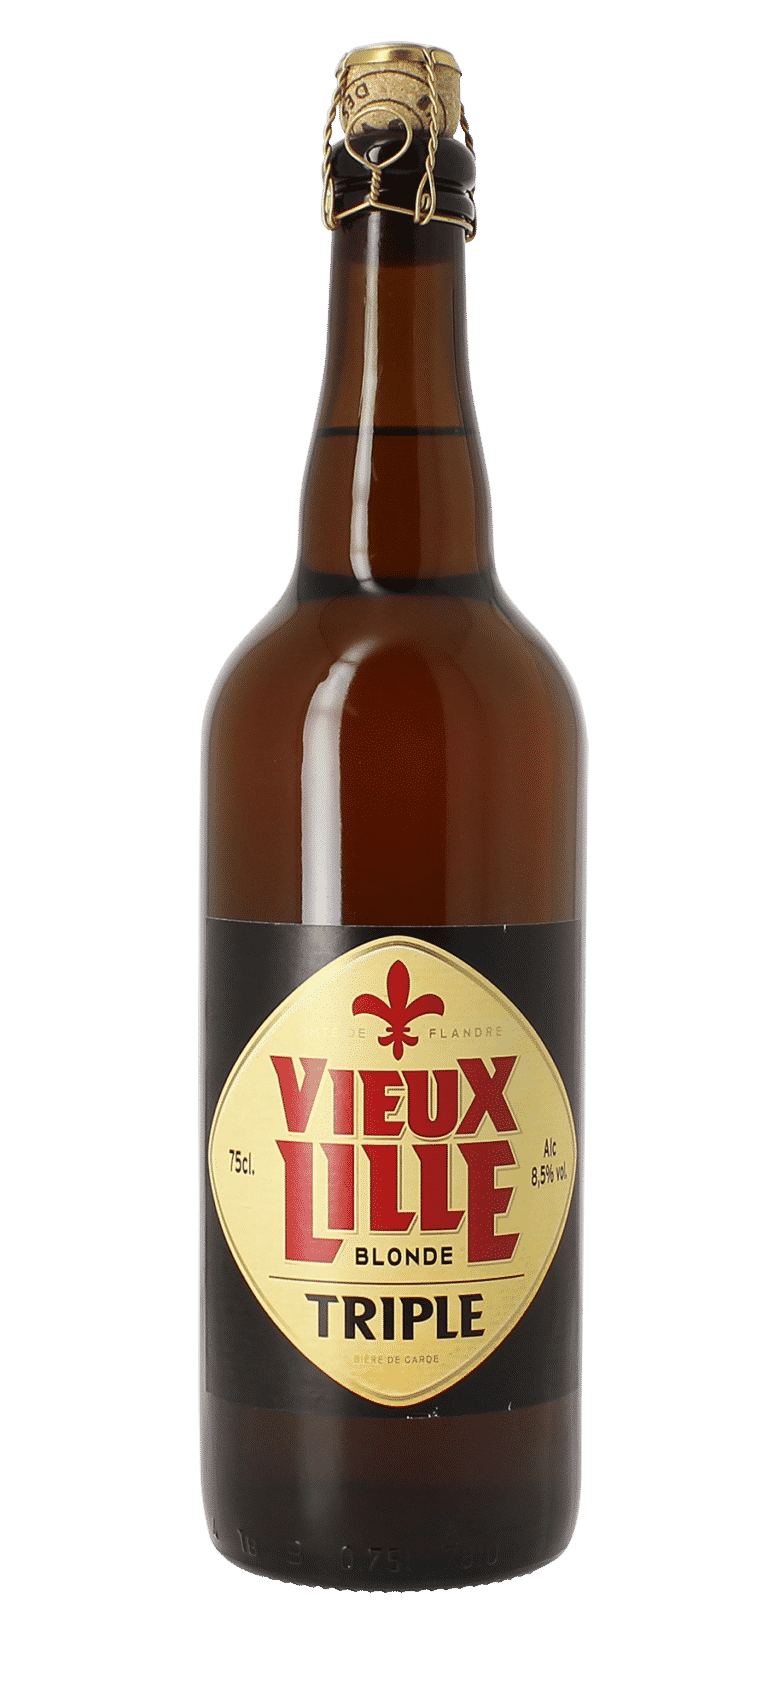 Bière Abbaye de Lille : caractéristiques, prix et histoire